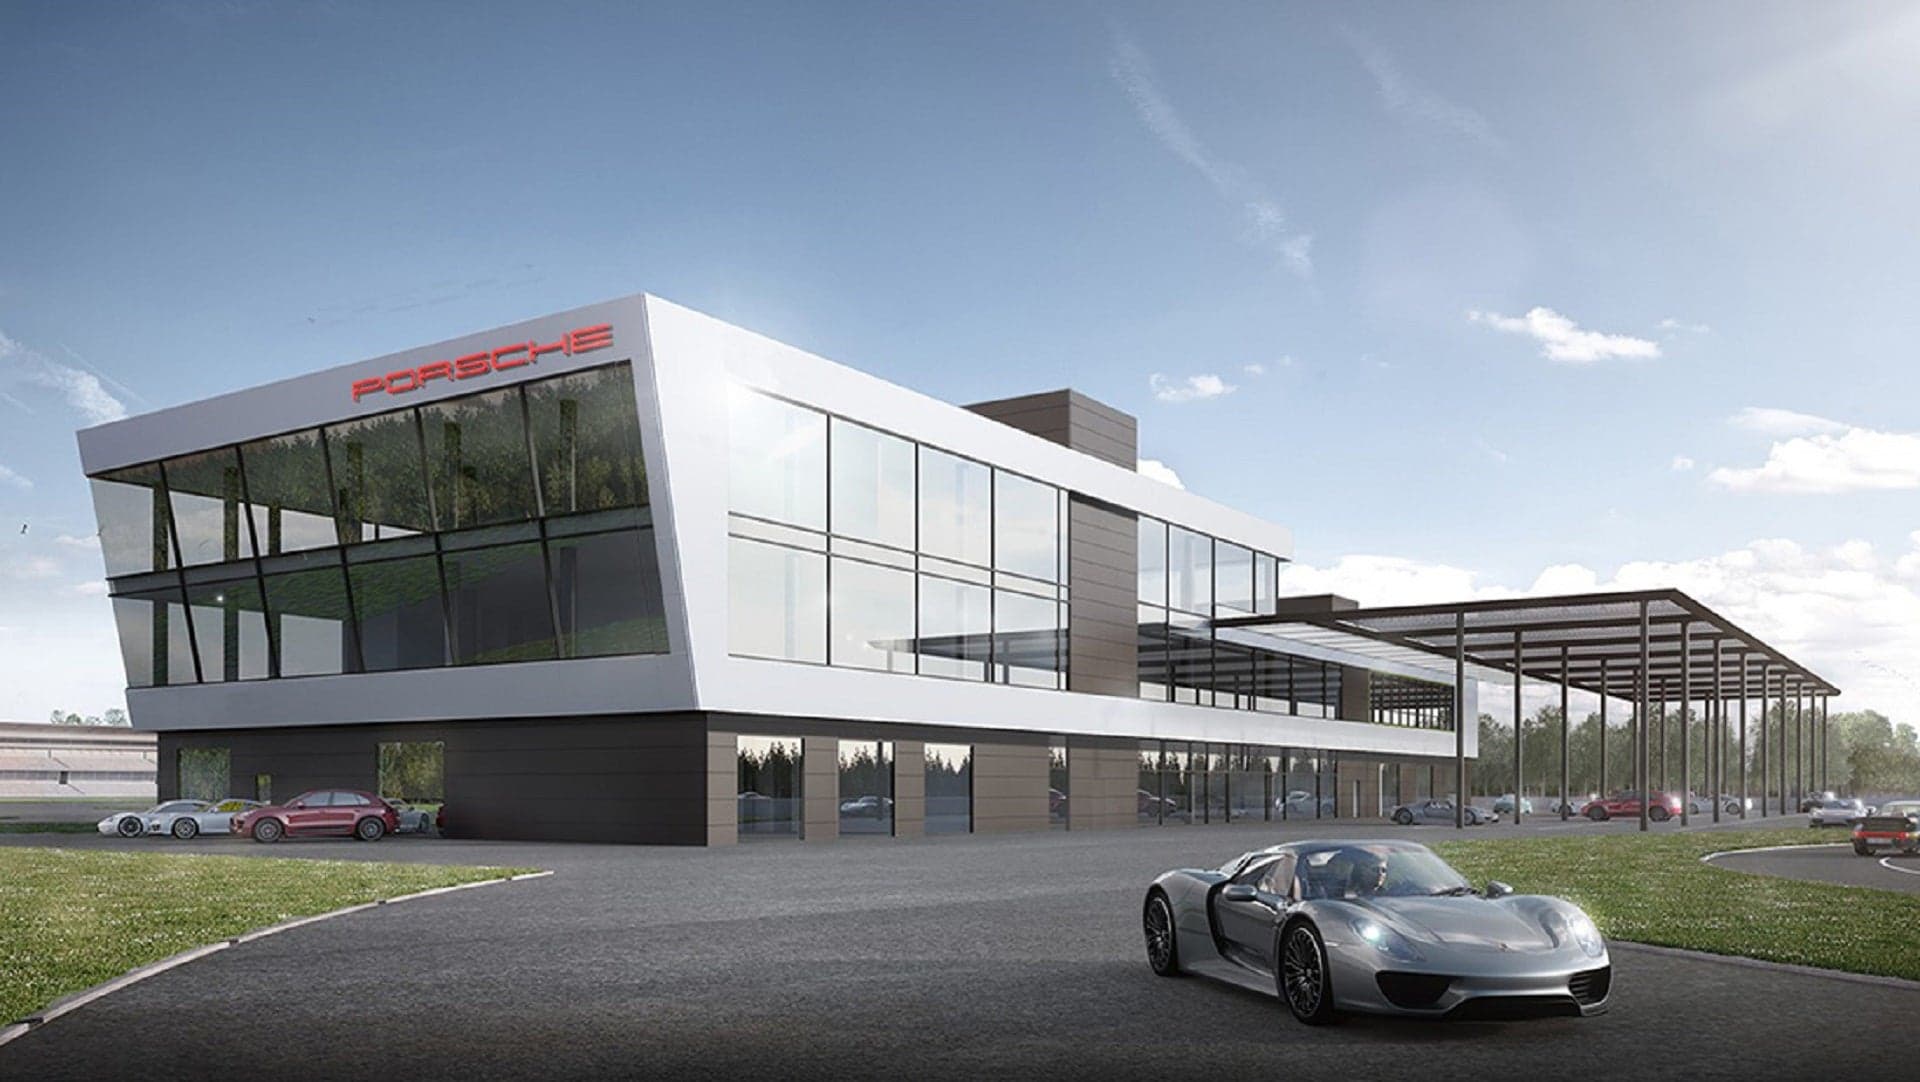 Porsche Breaks Ground at Future Hockenheimring Experience Center Site